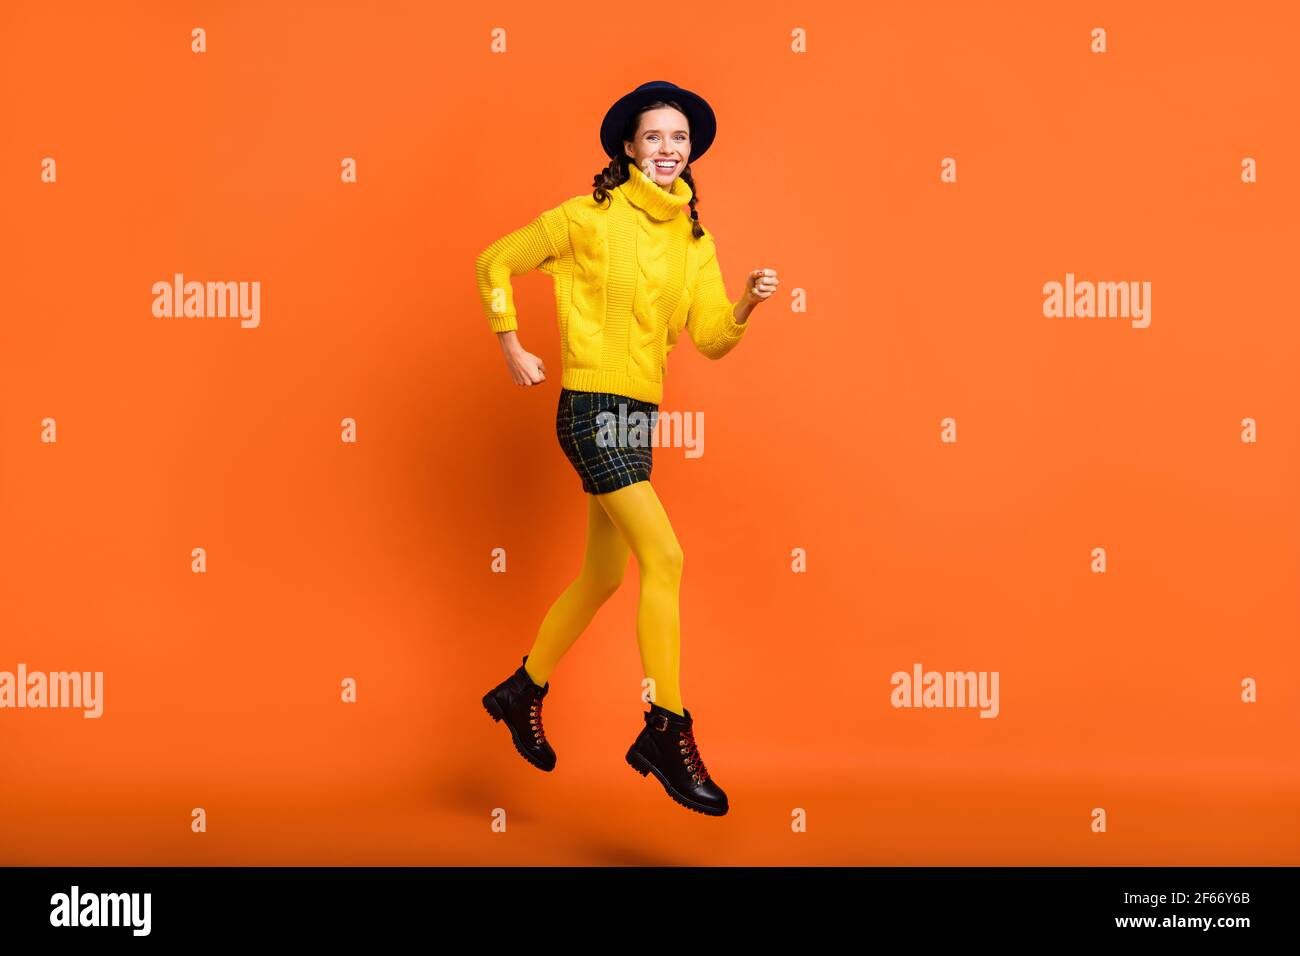 Vista completa del corpo di una bella ragazza allegra e skinny azione di corsa di salto isolata su sfondo arancione luminoso Foto Stock